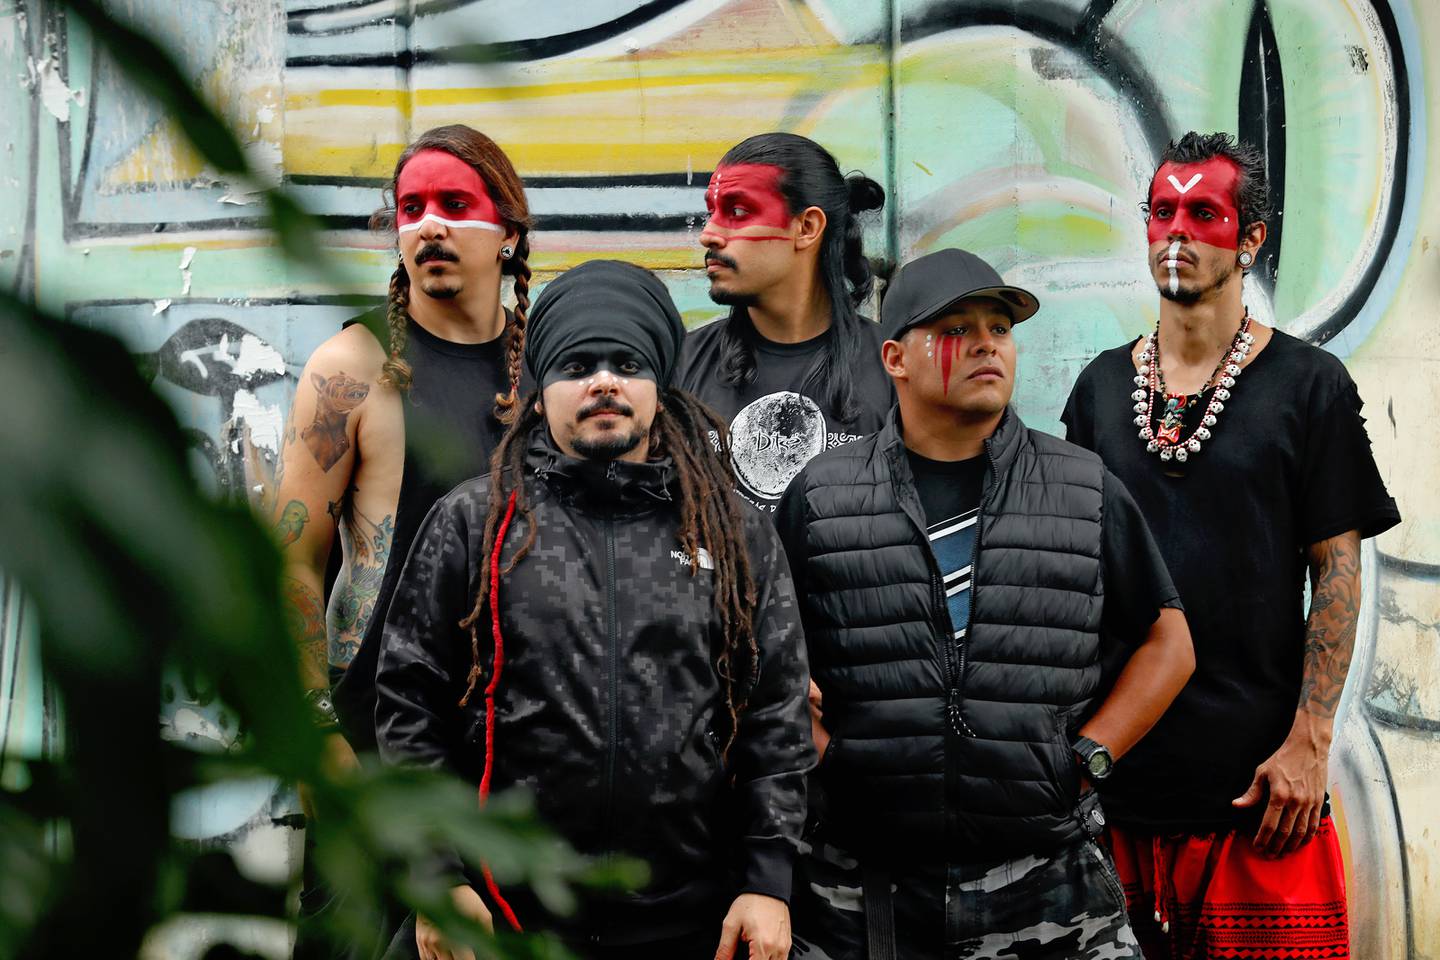 La banda costarricense Totem celebra sus 20 años de trayectoria, siempre al lado de su 'tribu', los fans que los han acompañado a lo largo del camino.